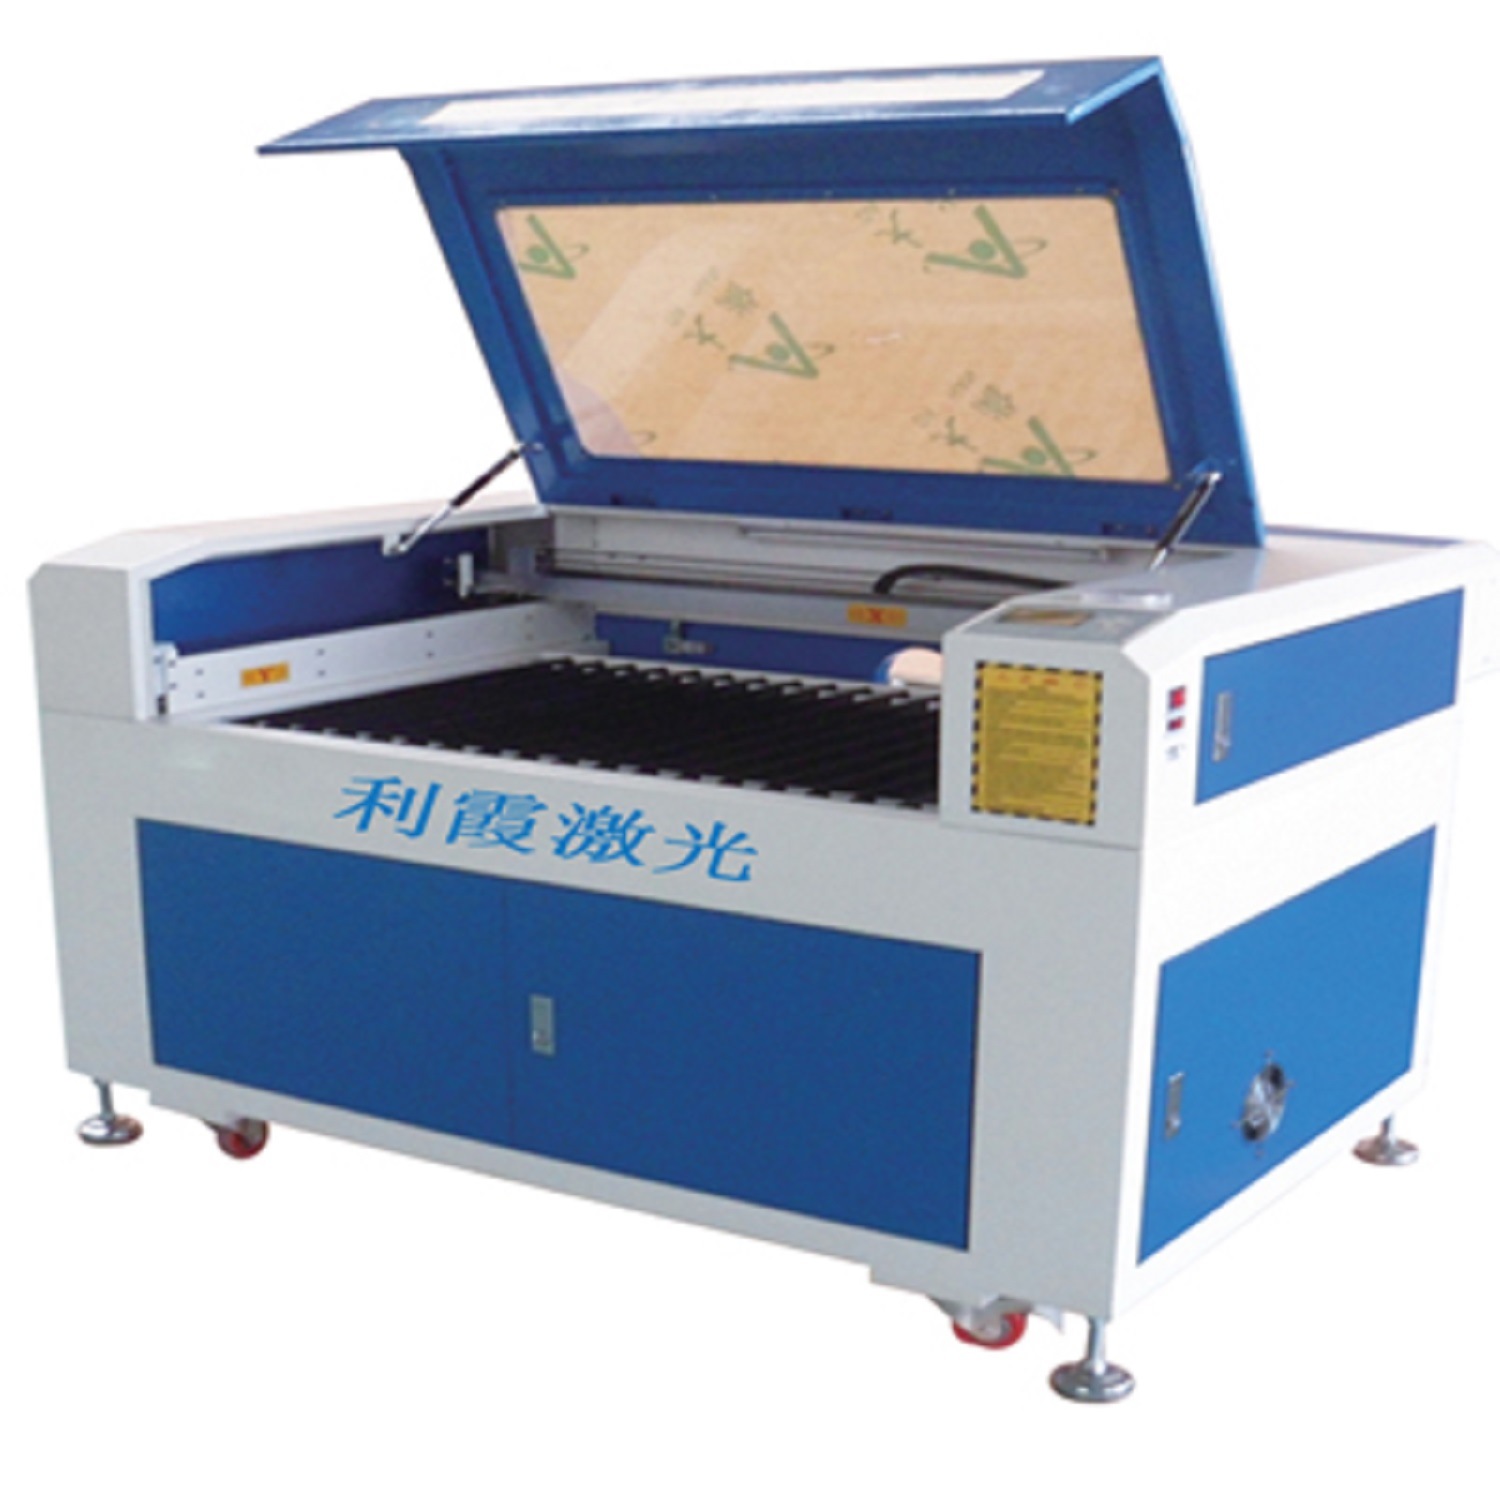 Shoe Design Laser Engraving Machine